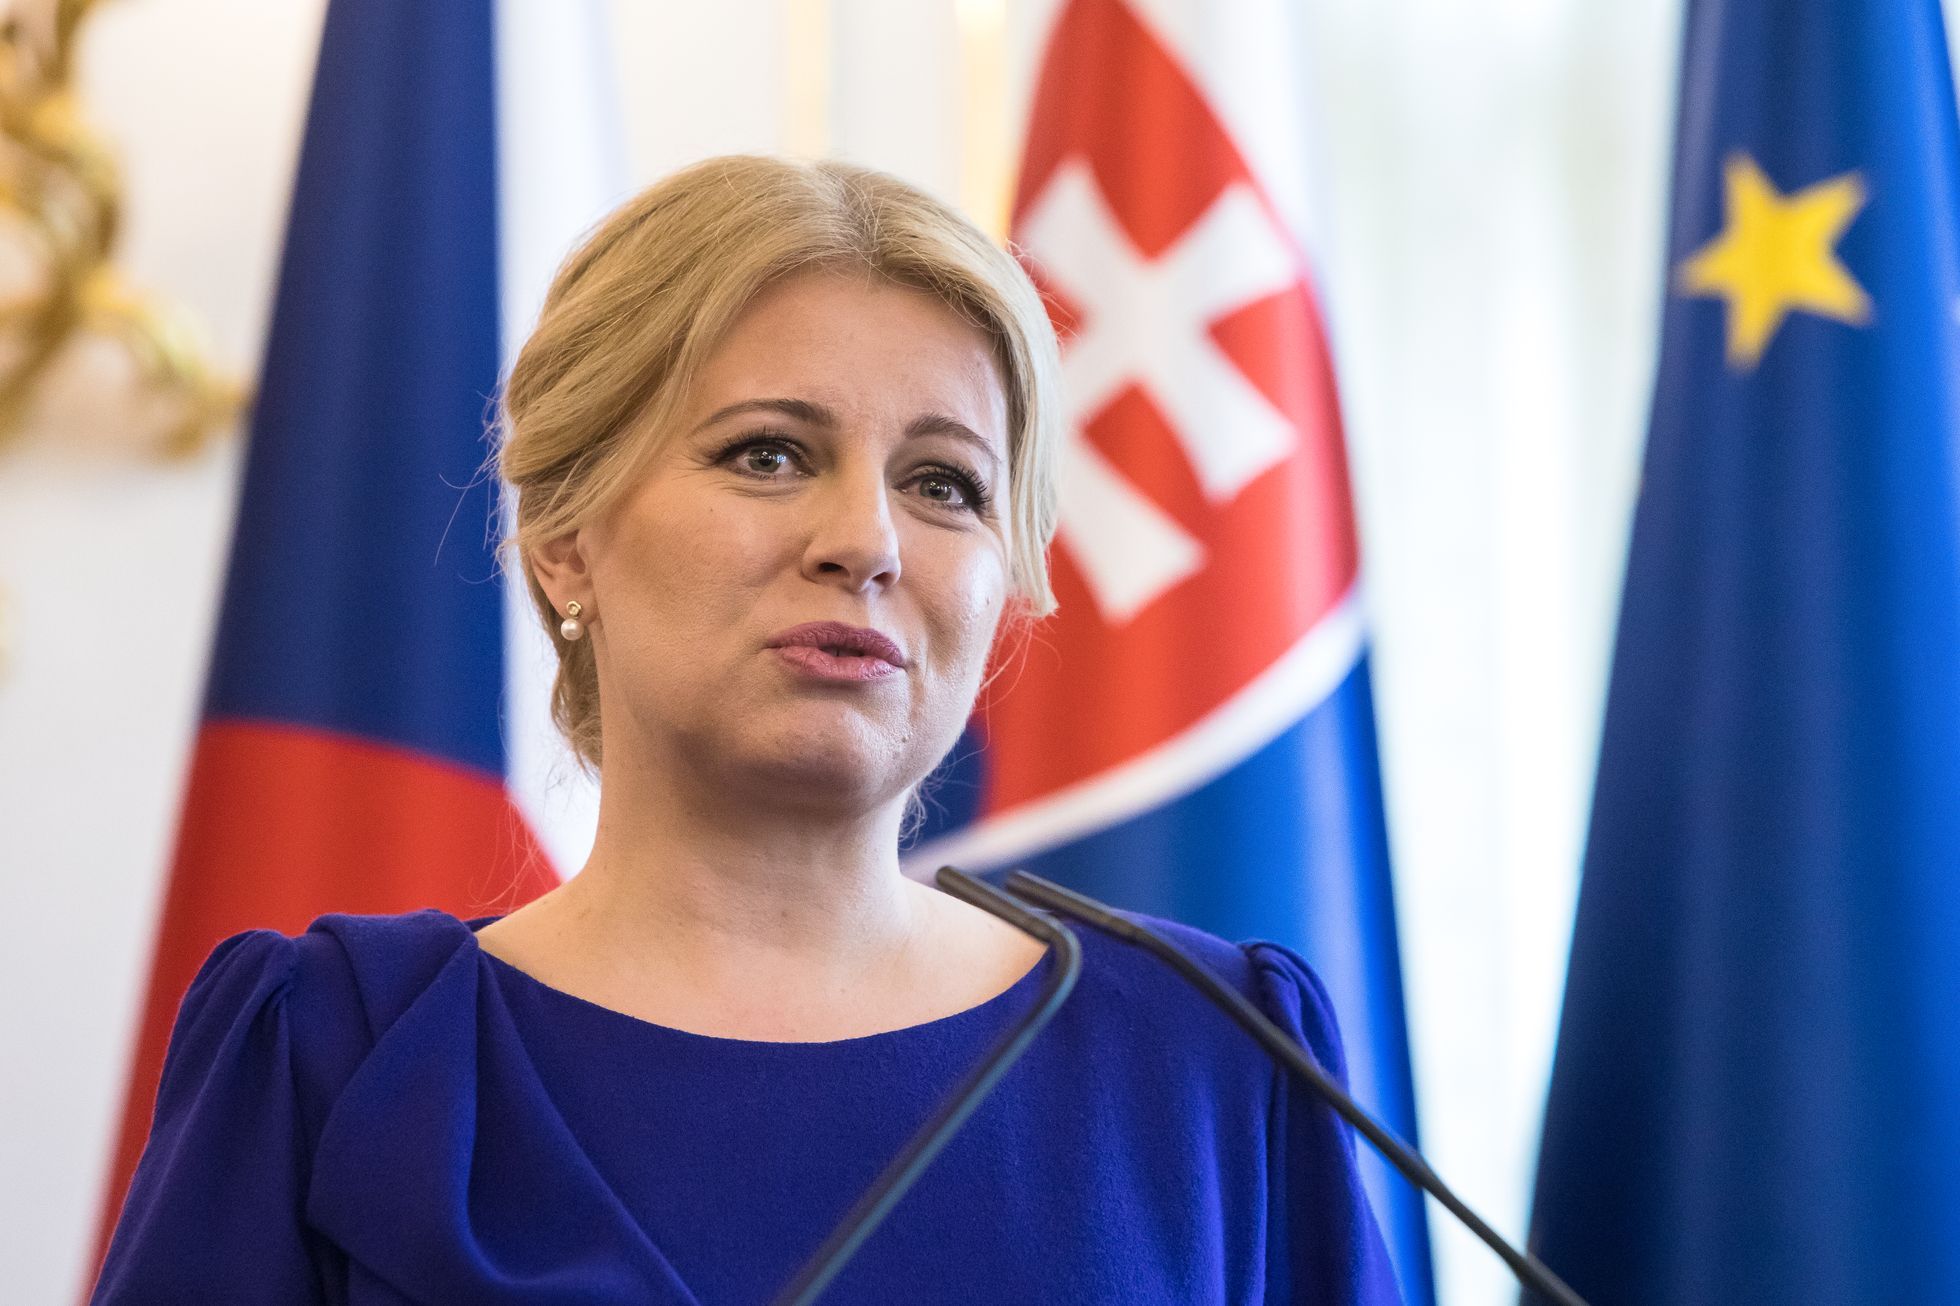 Zuzana Čaputová ha annunciato che non si candiderà più alla presidenza